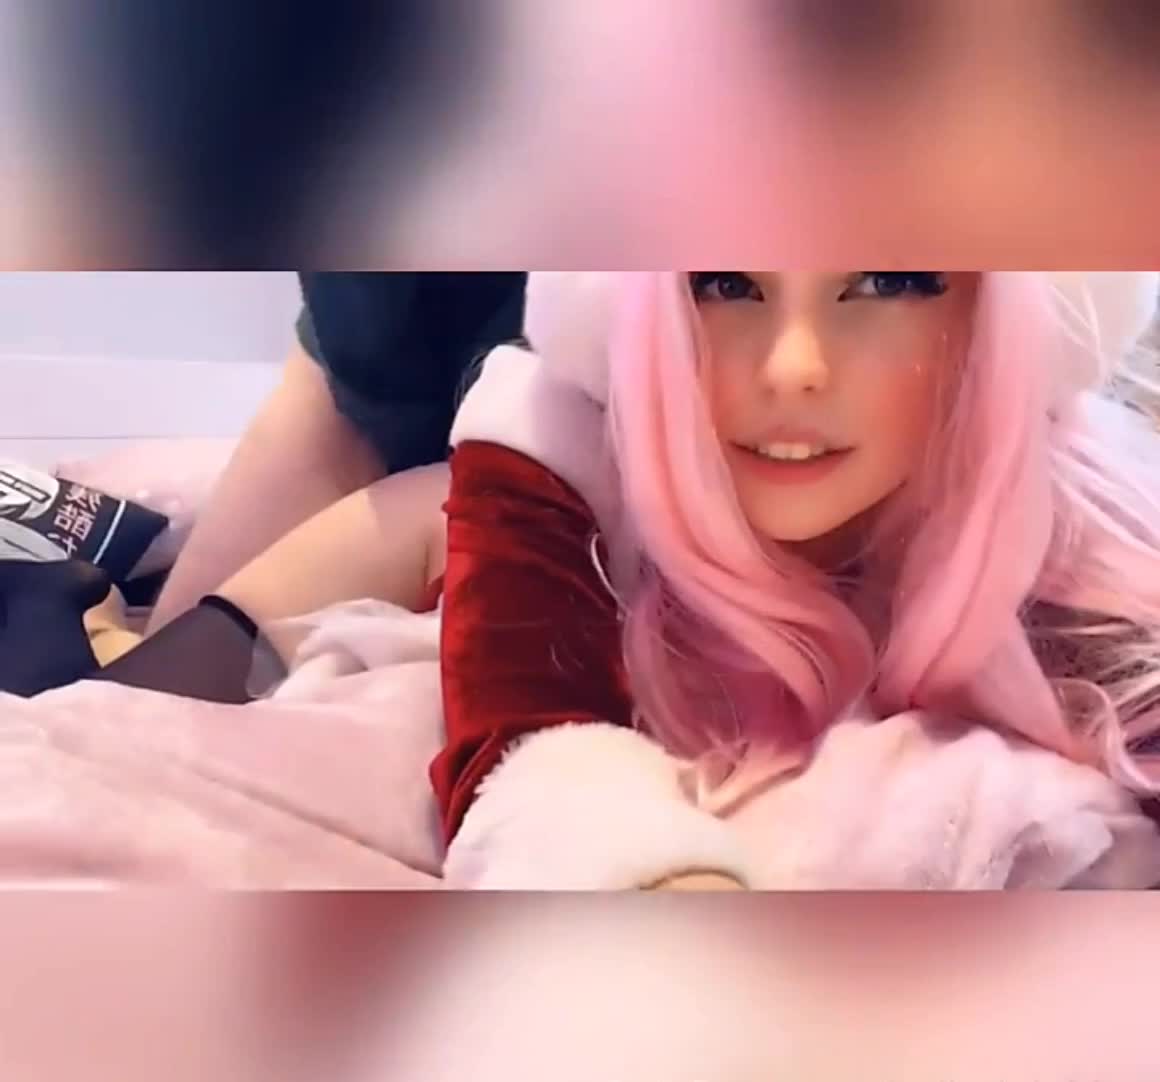 Gamer Girl Finally Having Sex On Camera